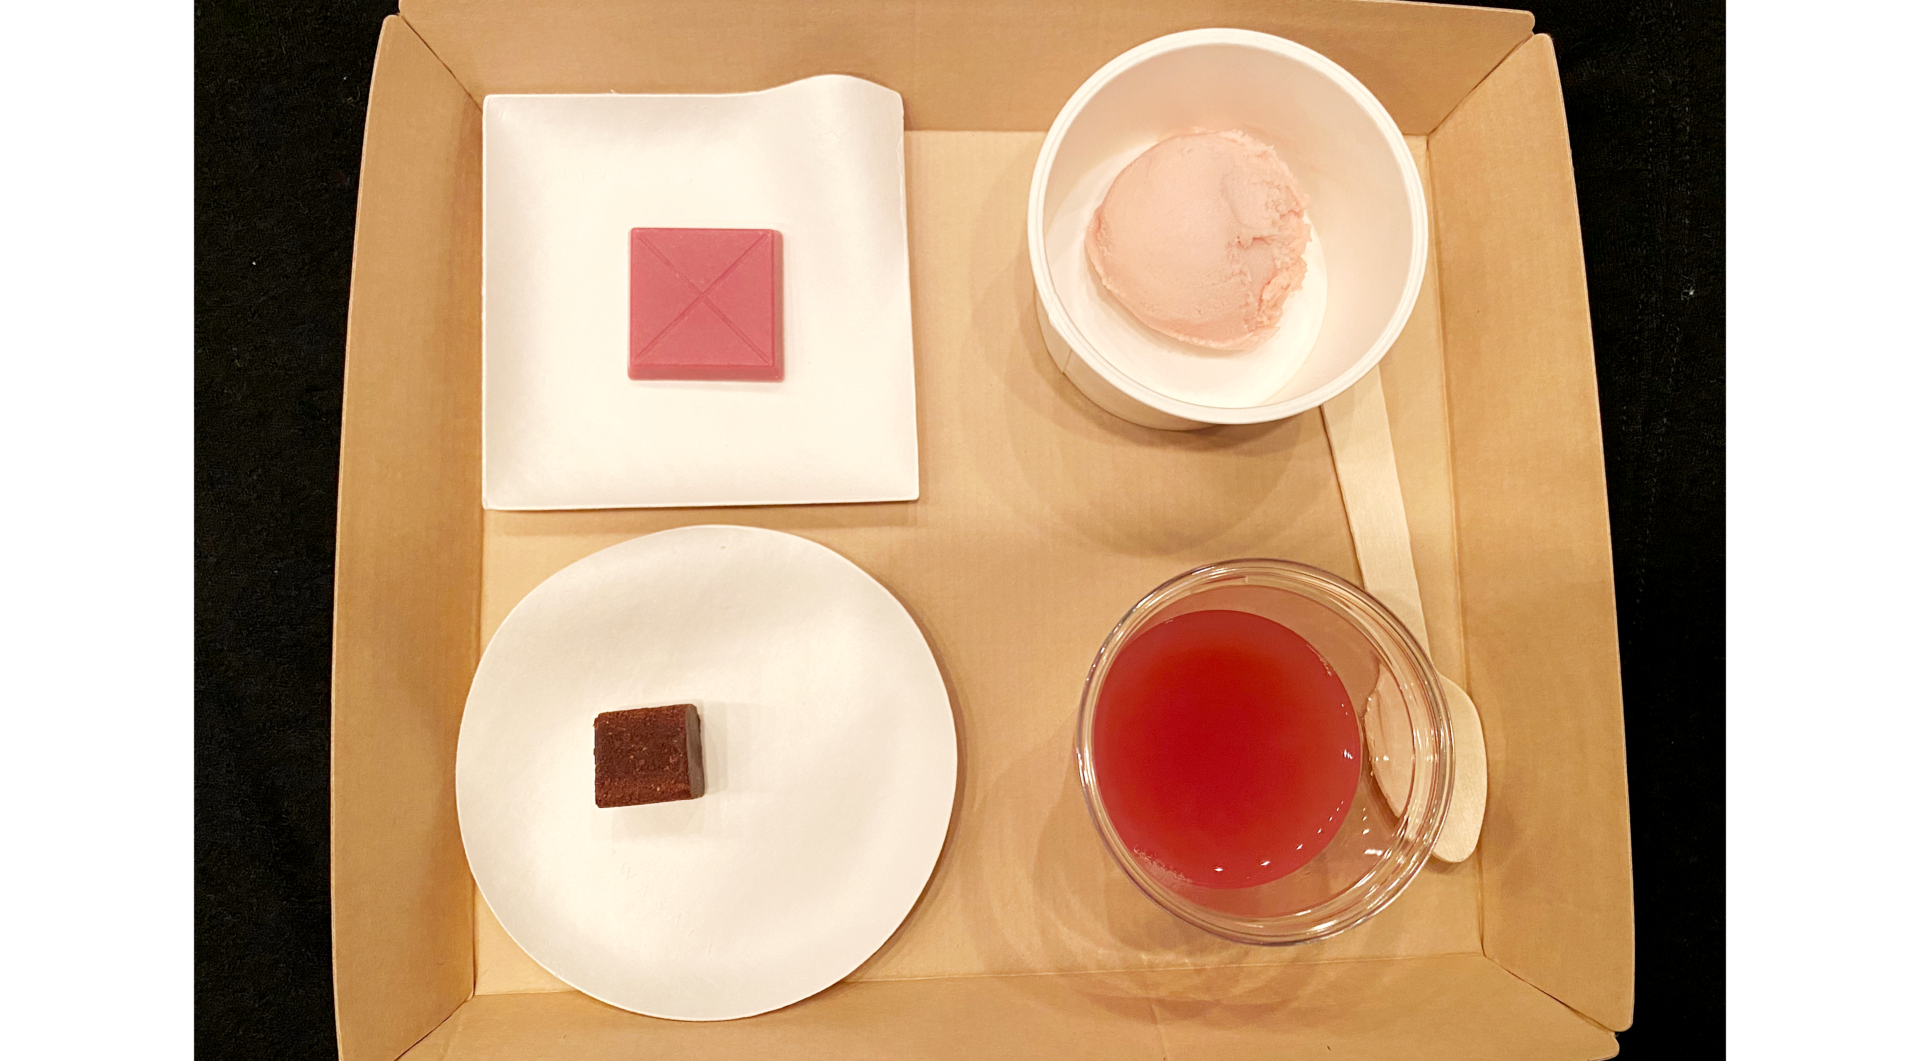 発表会会場での試食として提供された４商品の写真。四角い紙製のトレーに載ったかみざらに商品が入っています。ドリンクは赤い色がきれいにみえる透明のカップに入っています。